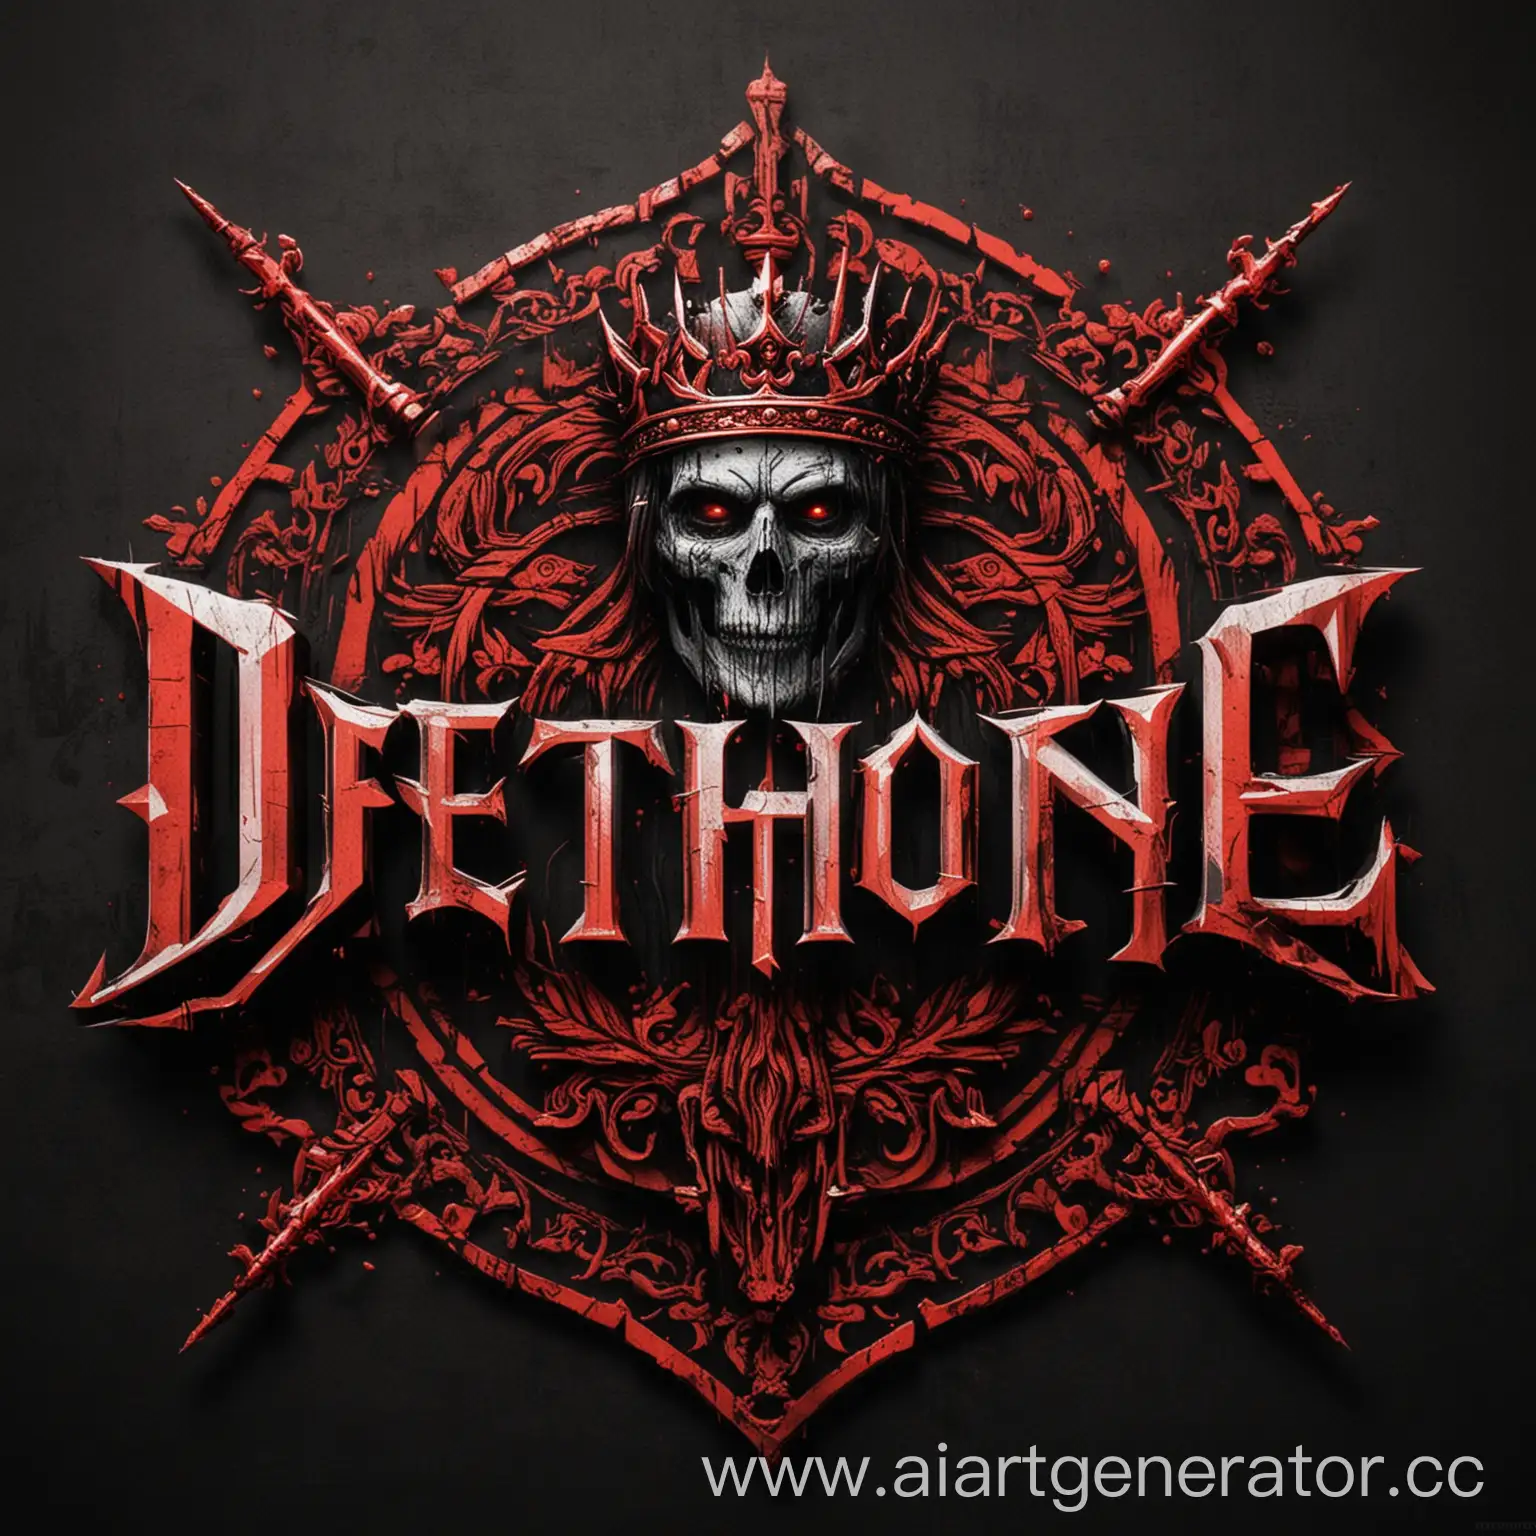 логотип "DETHRONE" размером 60x60 пикселей, в черно-красных цветах